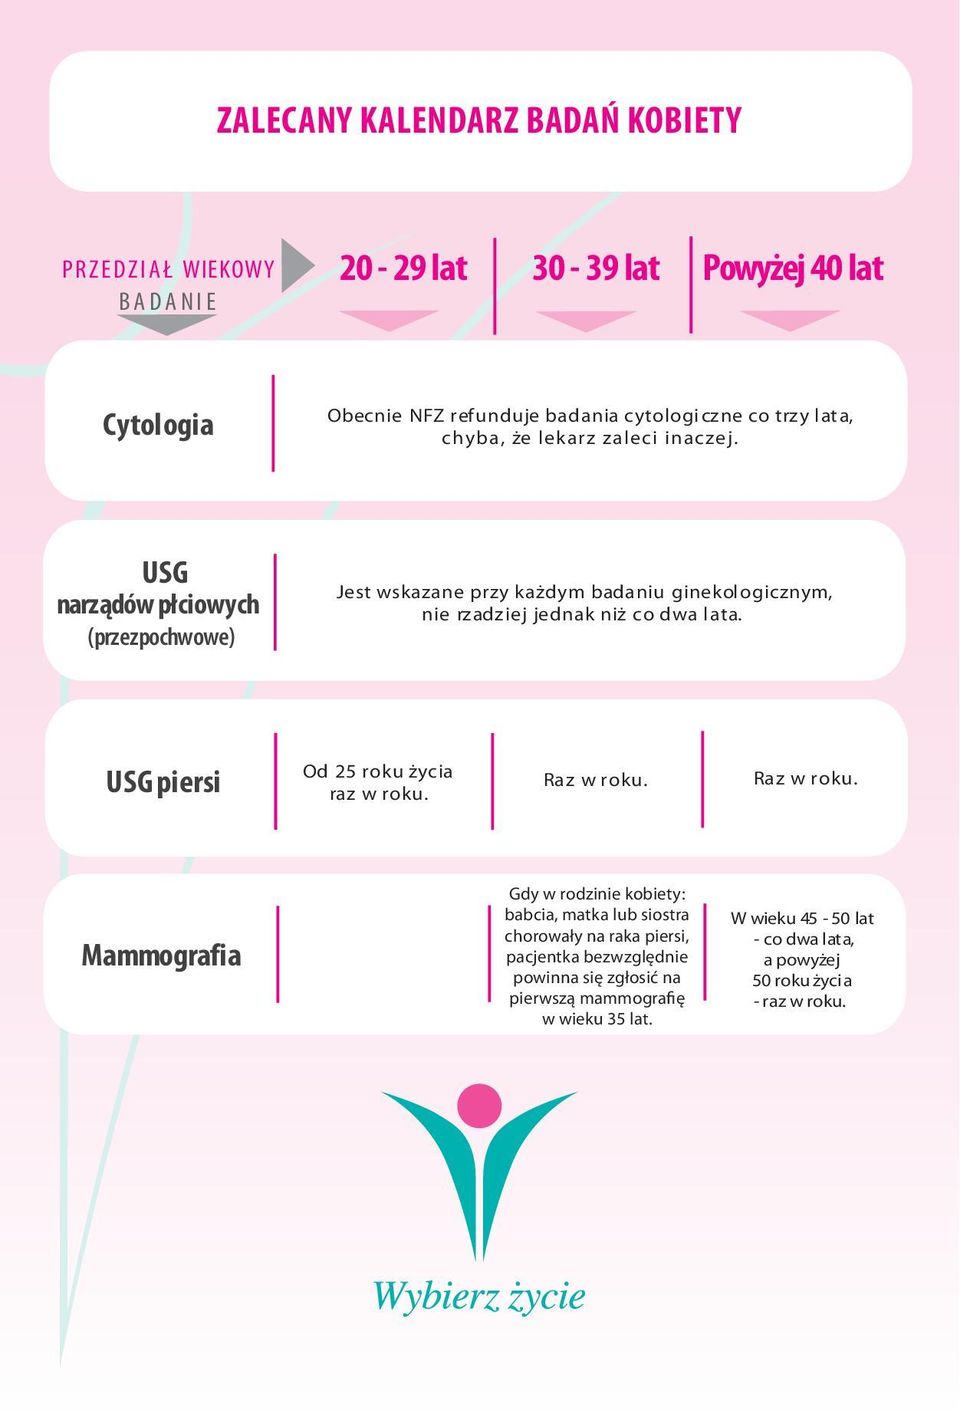 USG narządów płciowych (przezpochwowe) Jest wskazane przy każdym badaniu ginekol ogicznym, nie rzadziej jednak niż co dwa l ata.